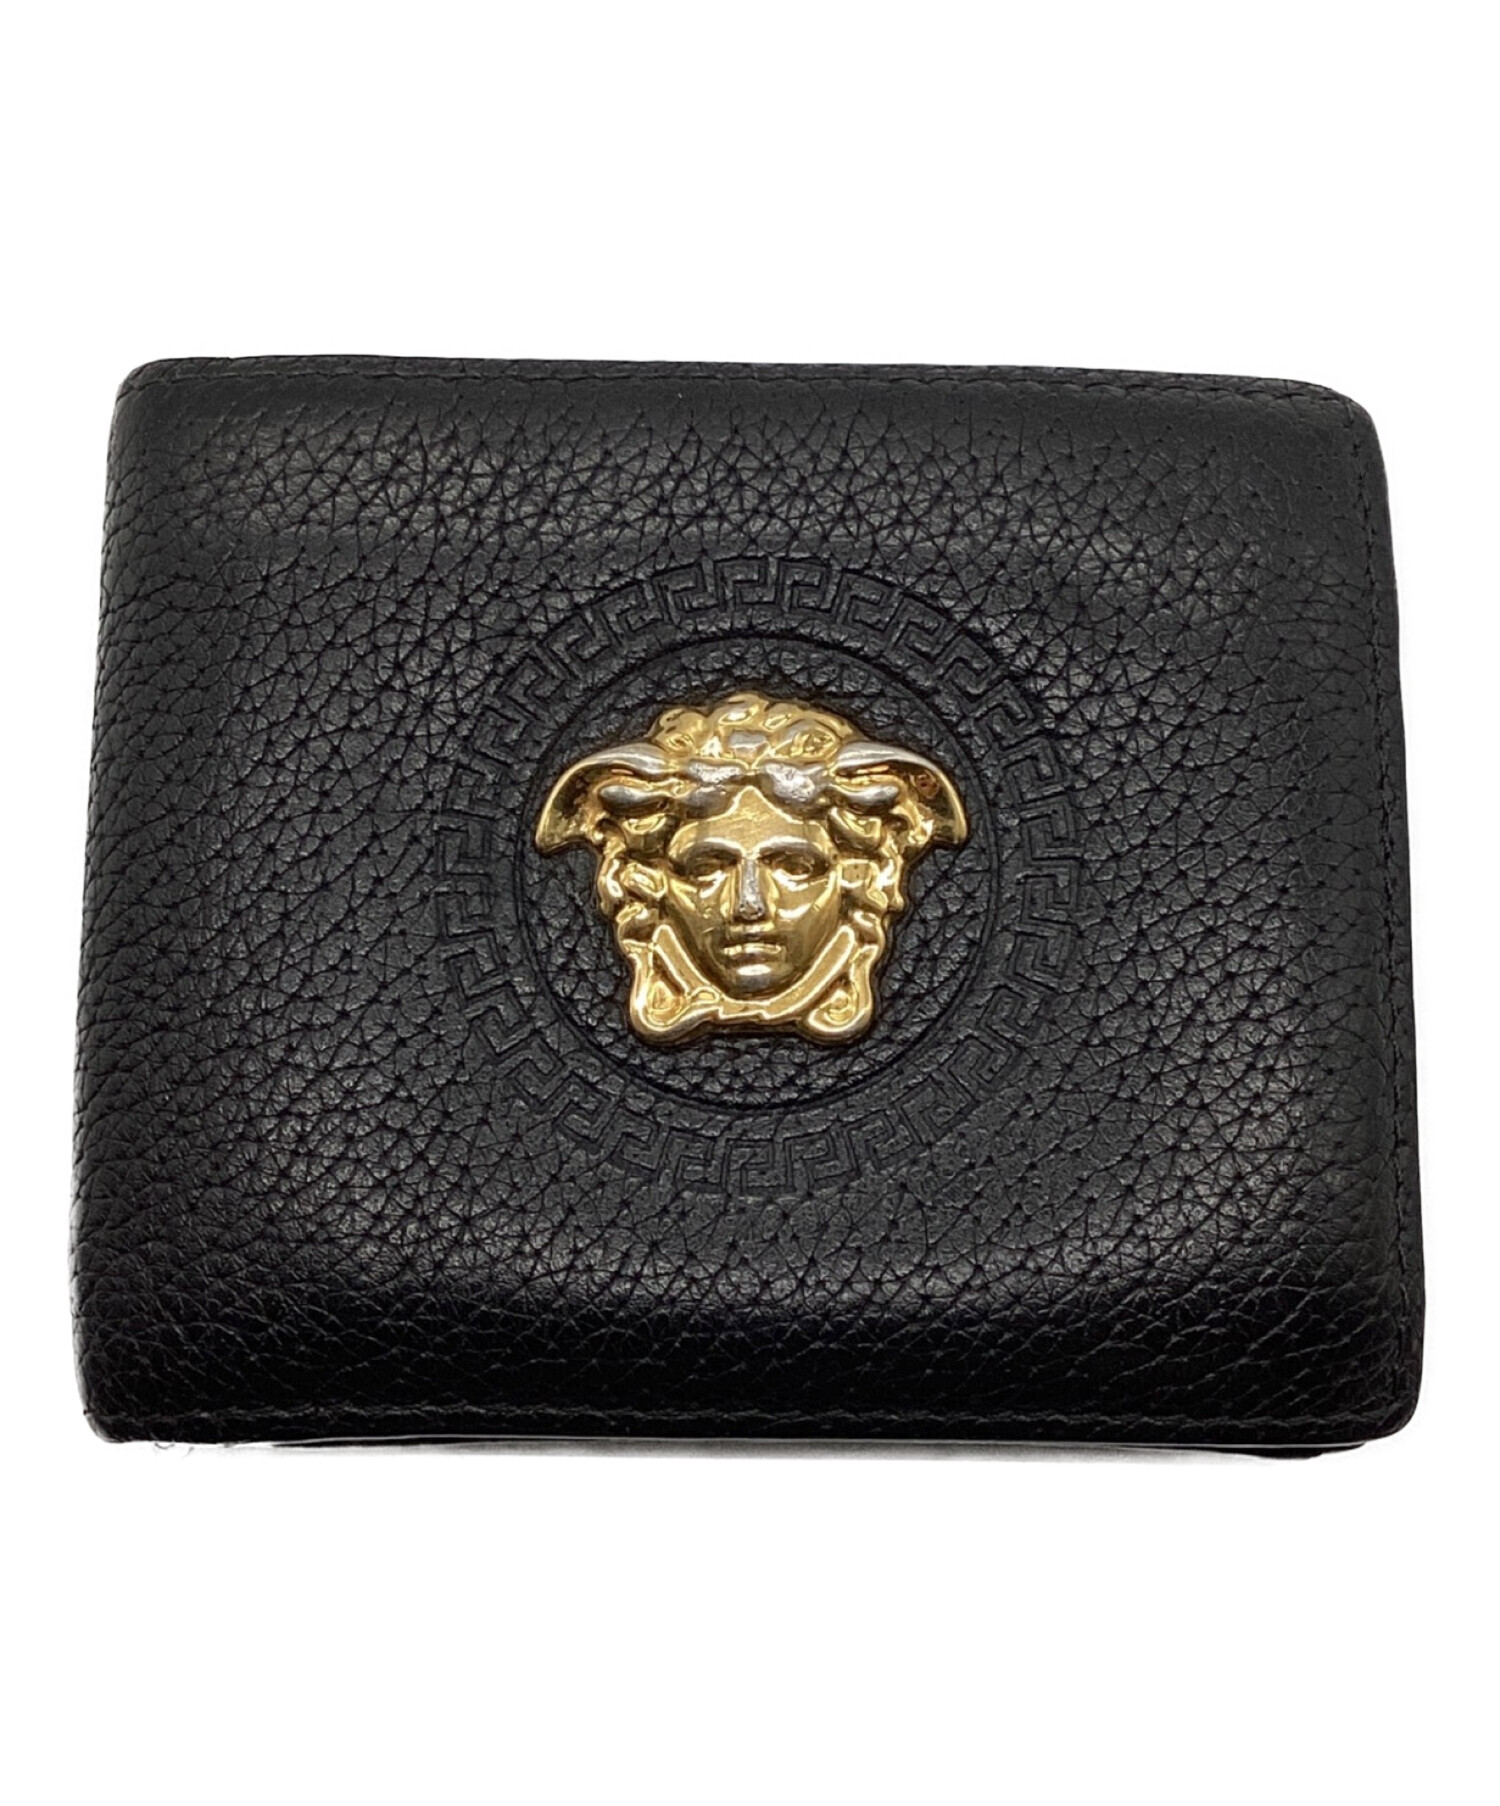 Versace 財布 - 折り財布